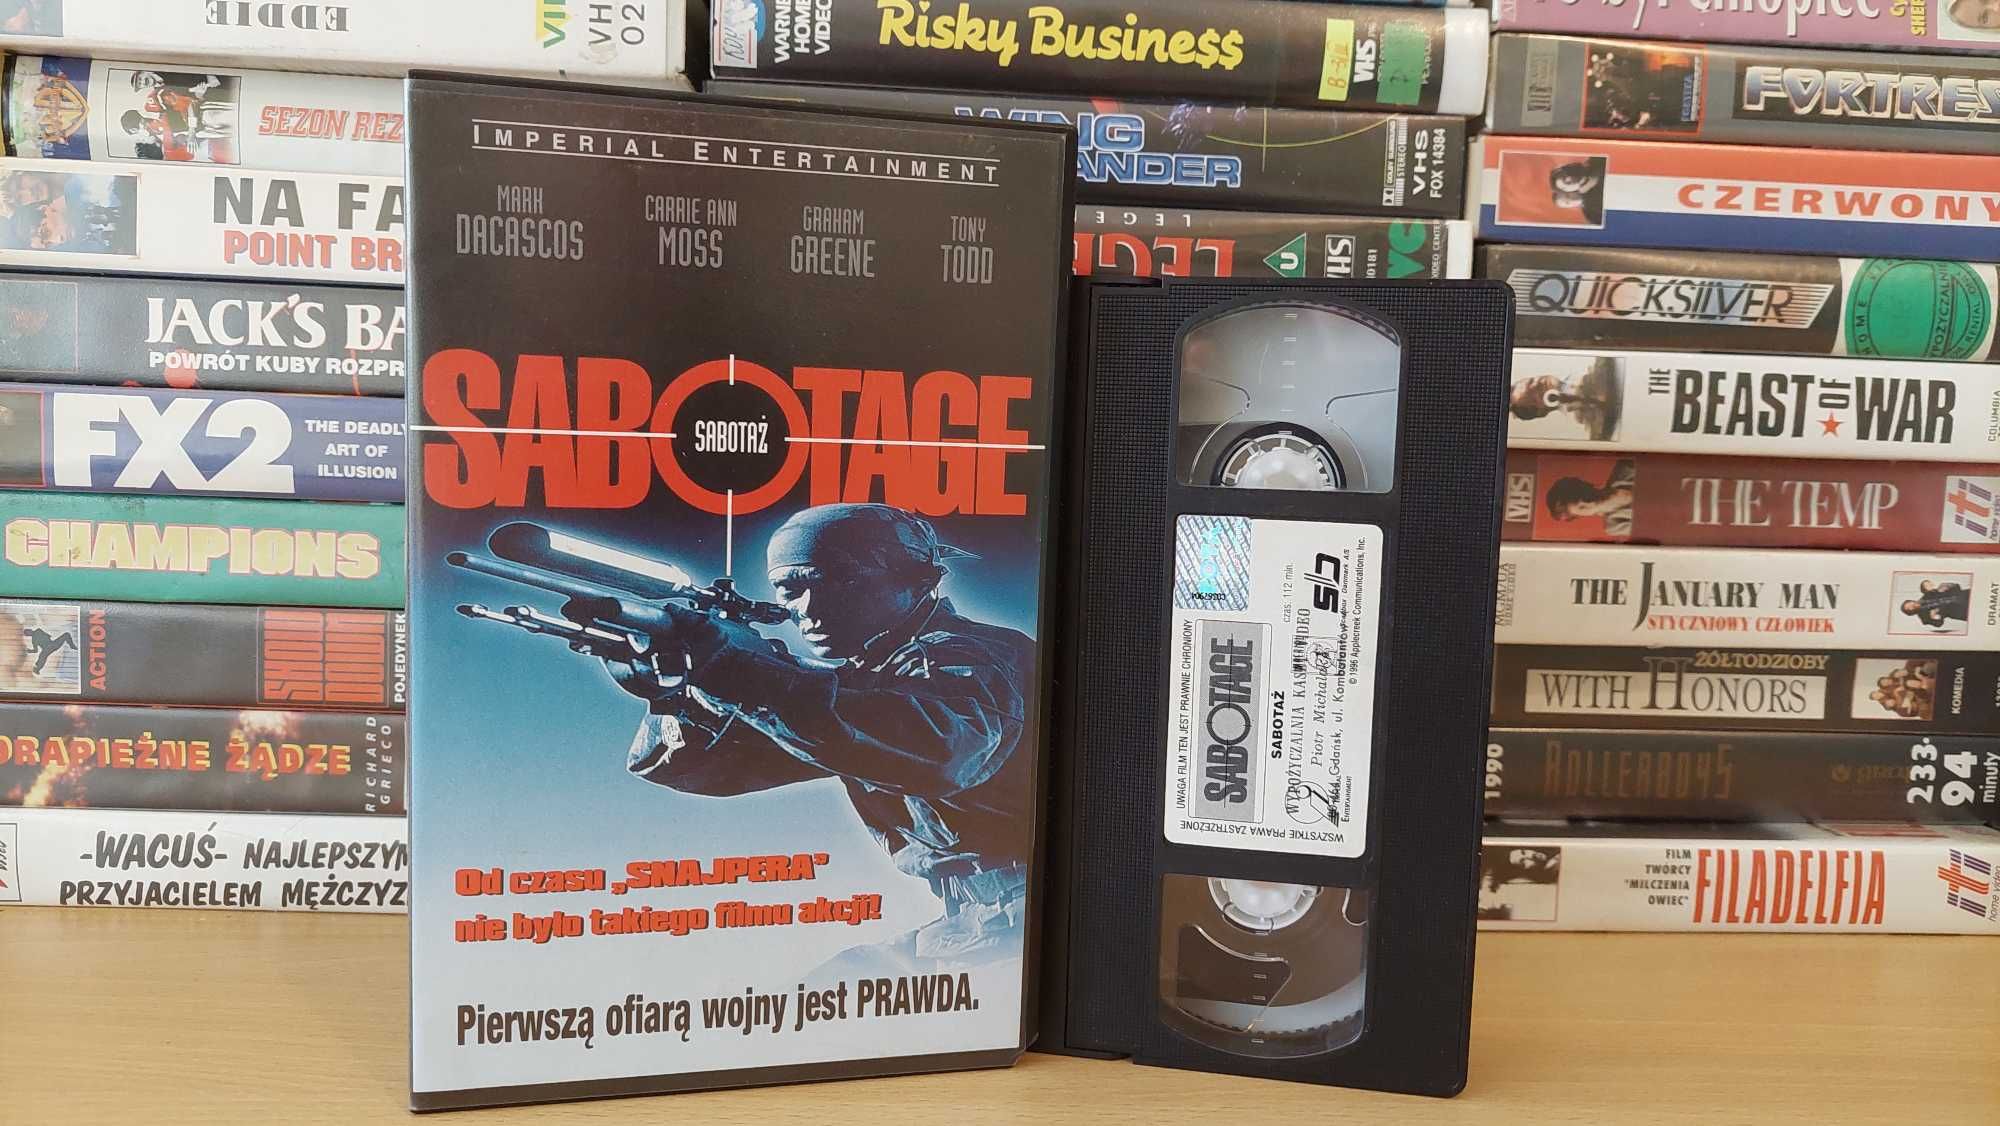 Sabotaż - (Sabotage) - VHS